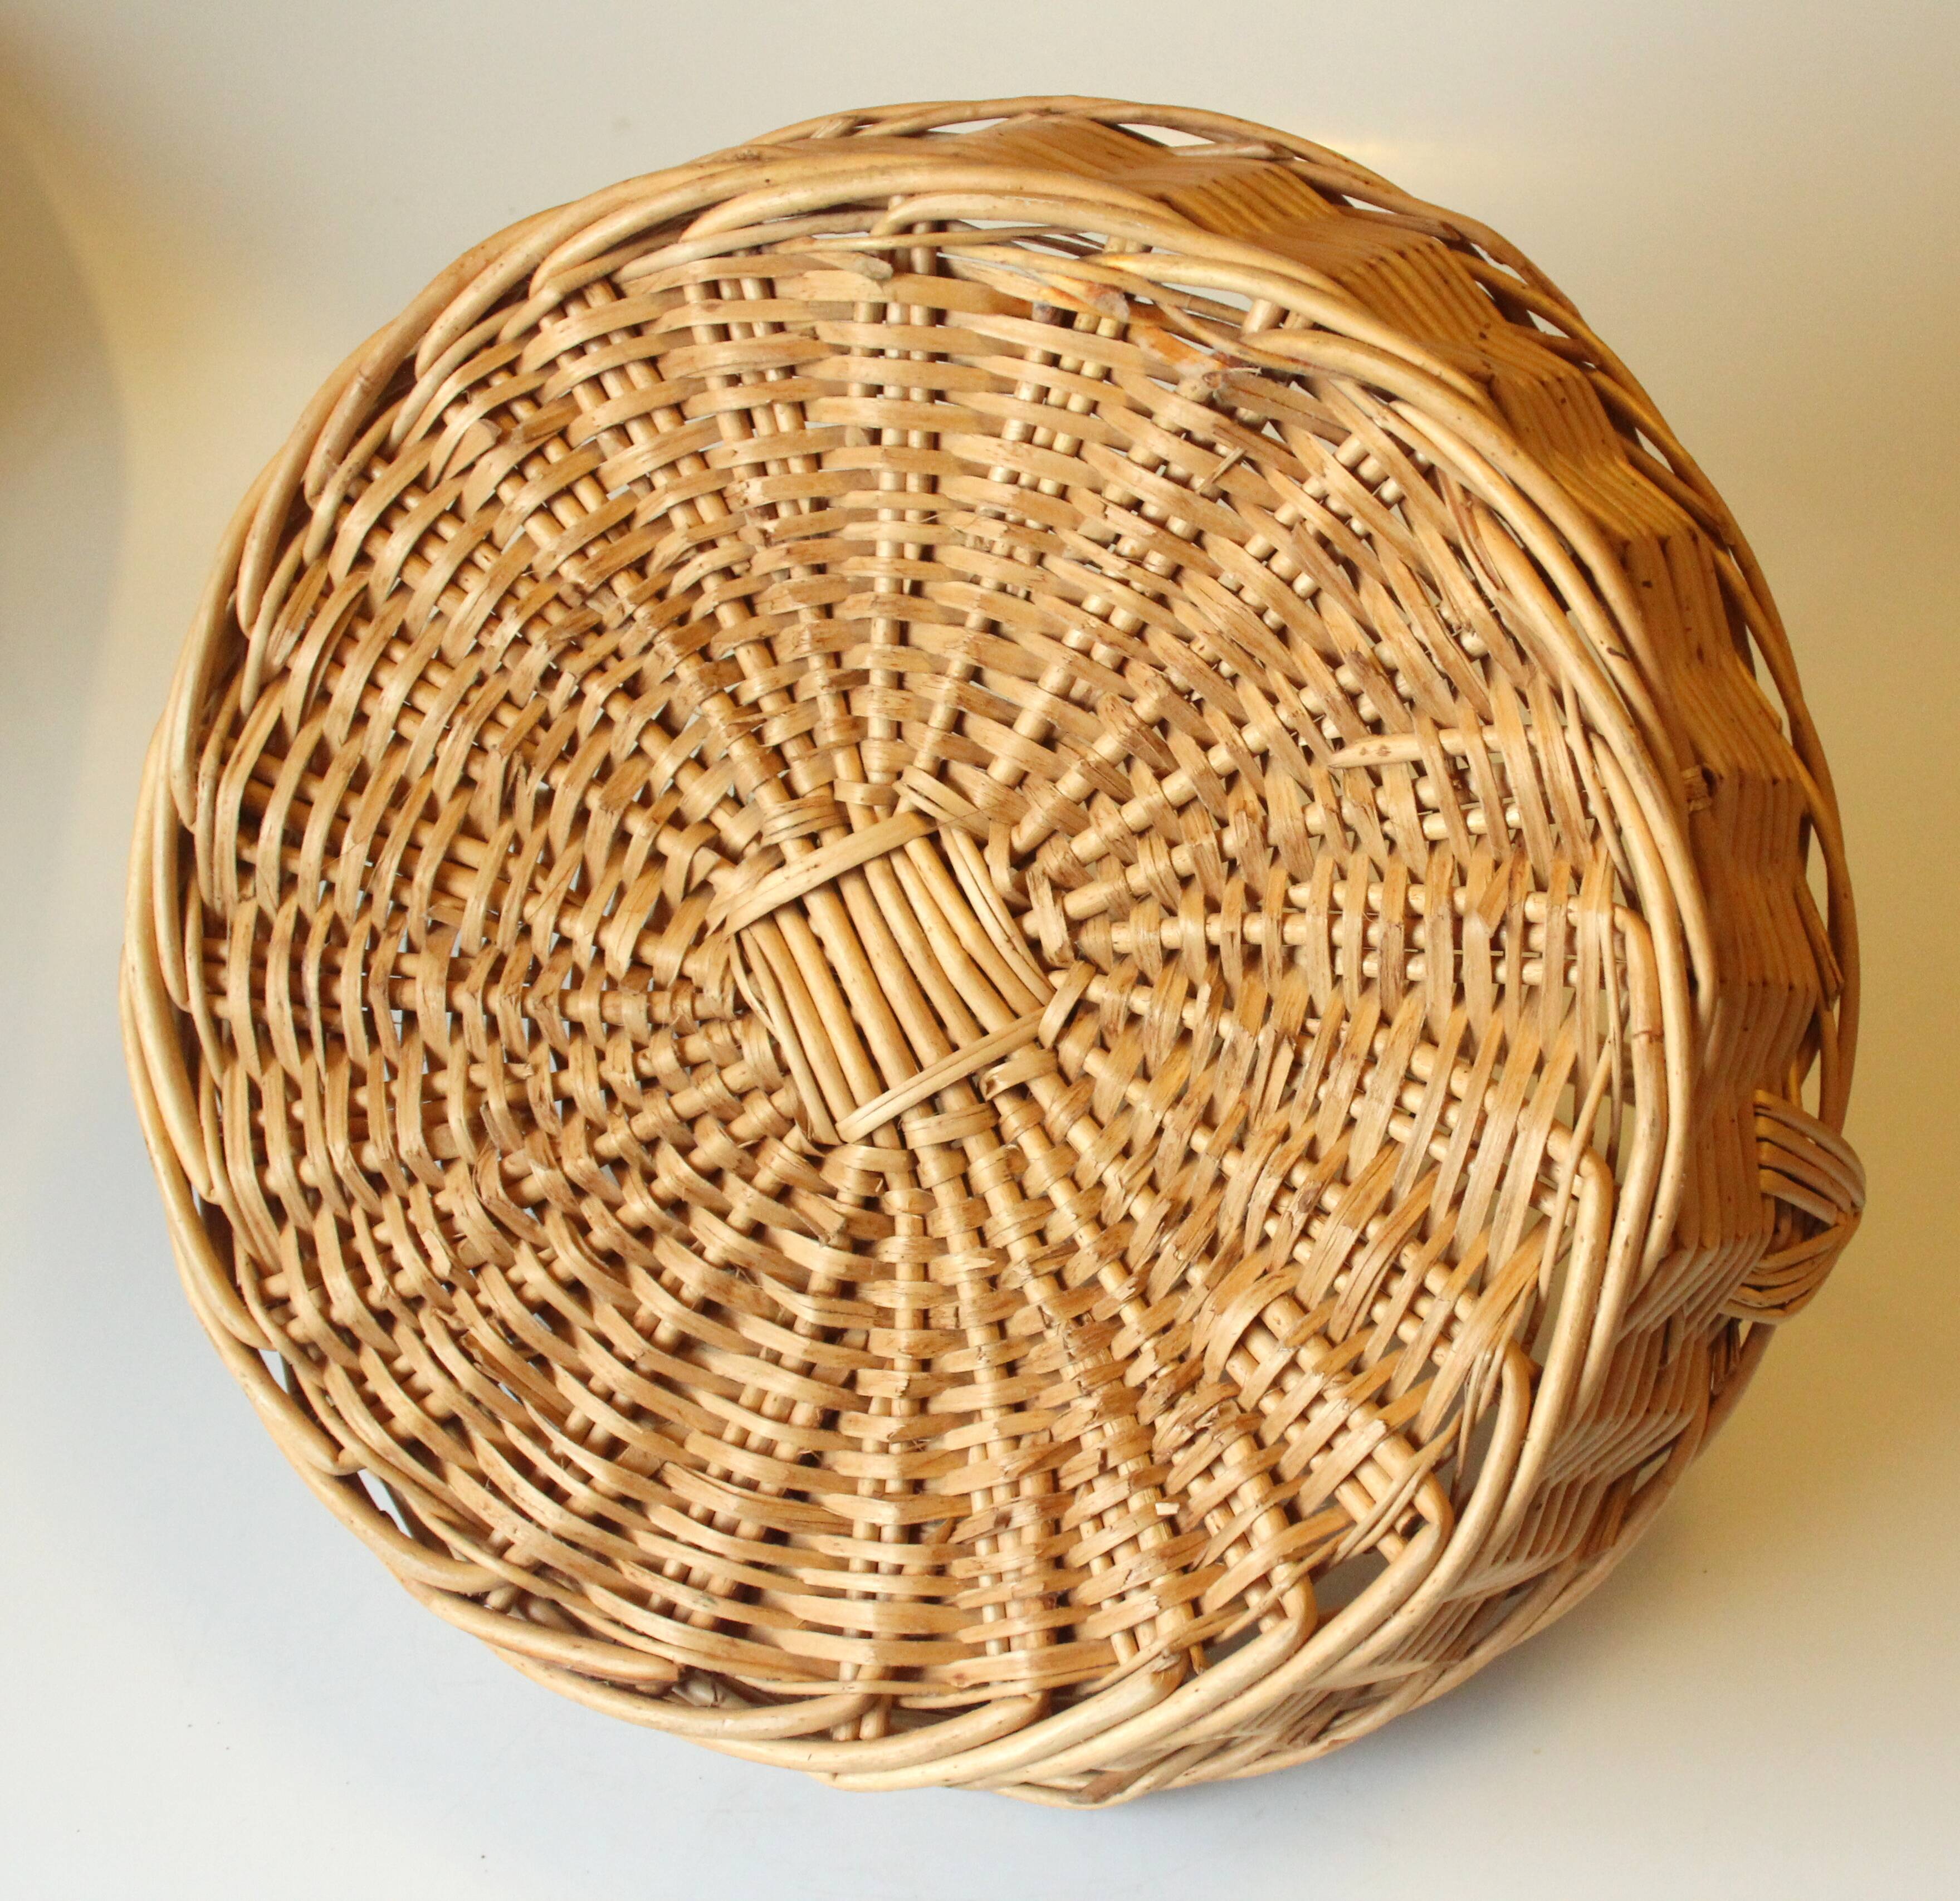 Natural Woven Wicker Rattan Basket Thai Hand made Round 9" Fruit Storage Vintage